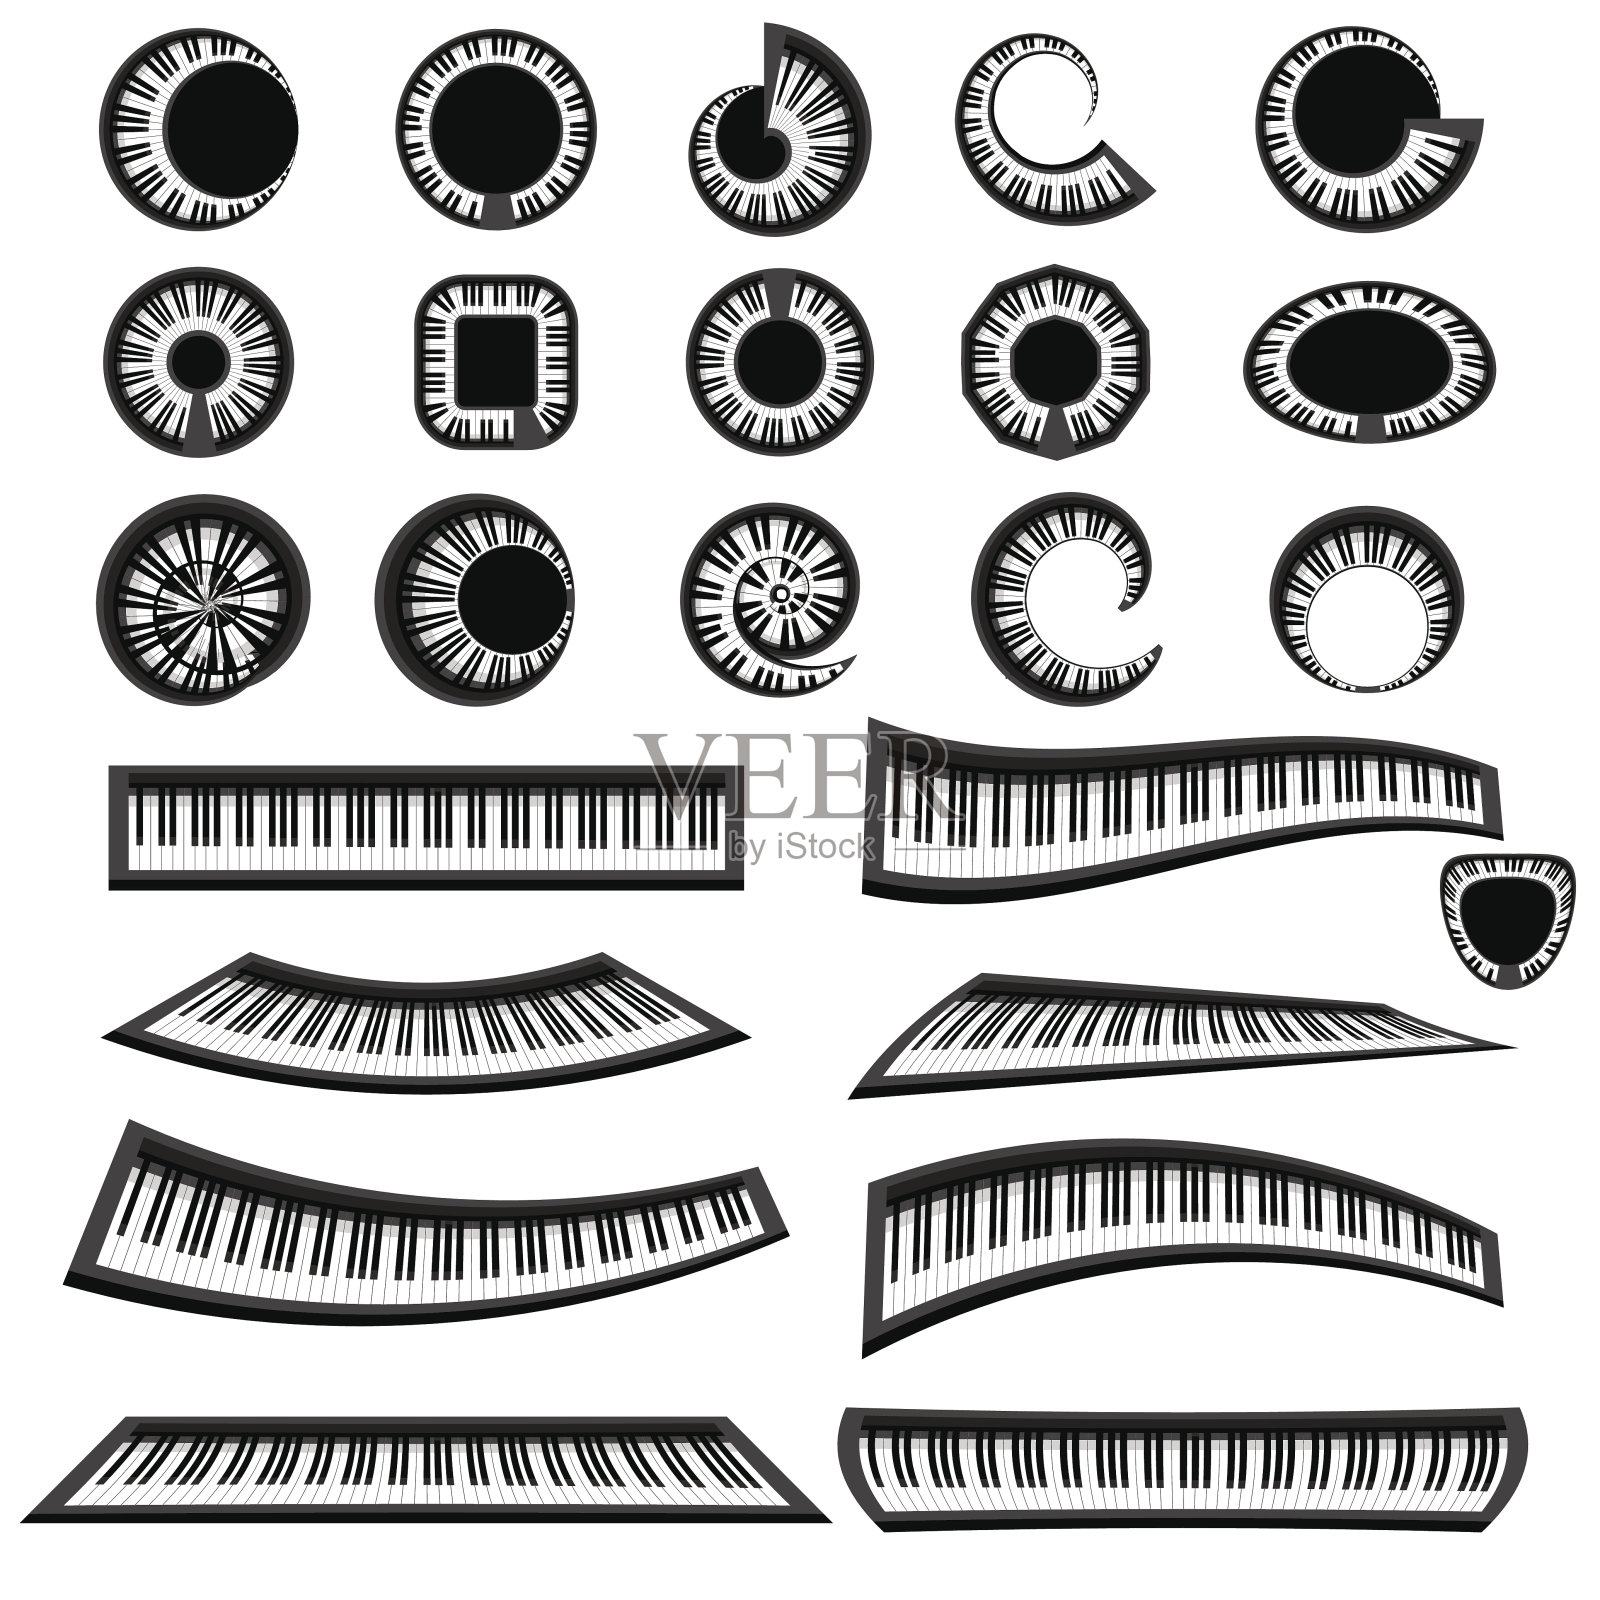 音乐钢琴键盘插画图片素材